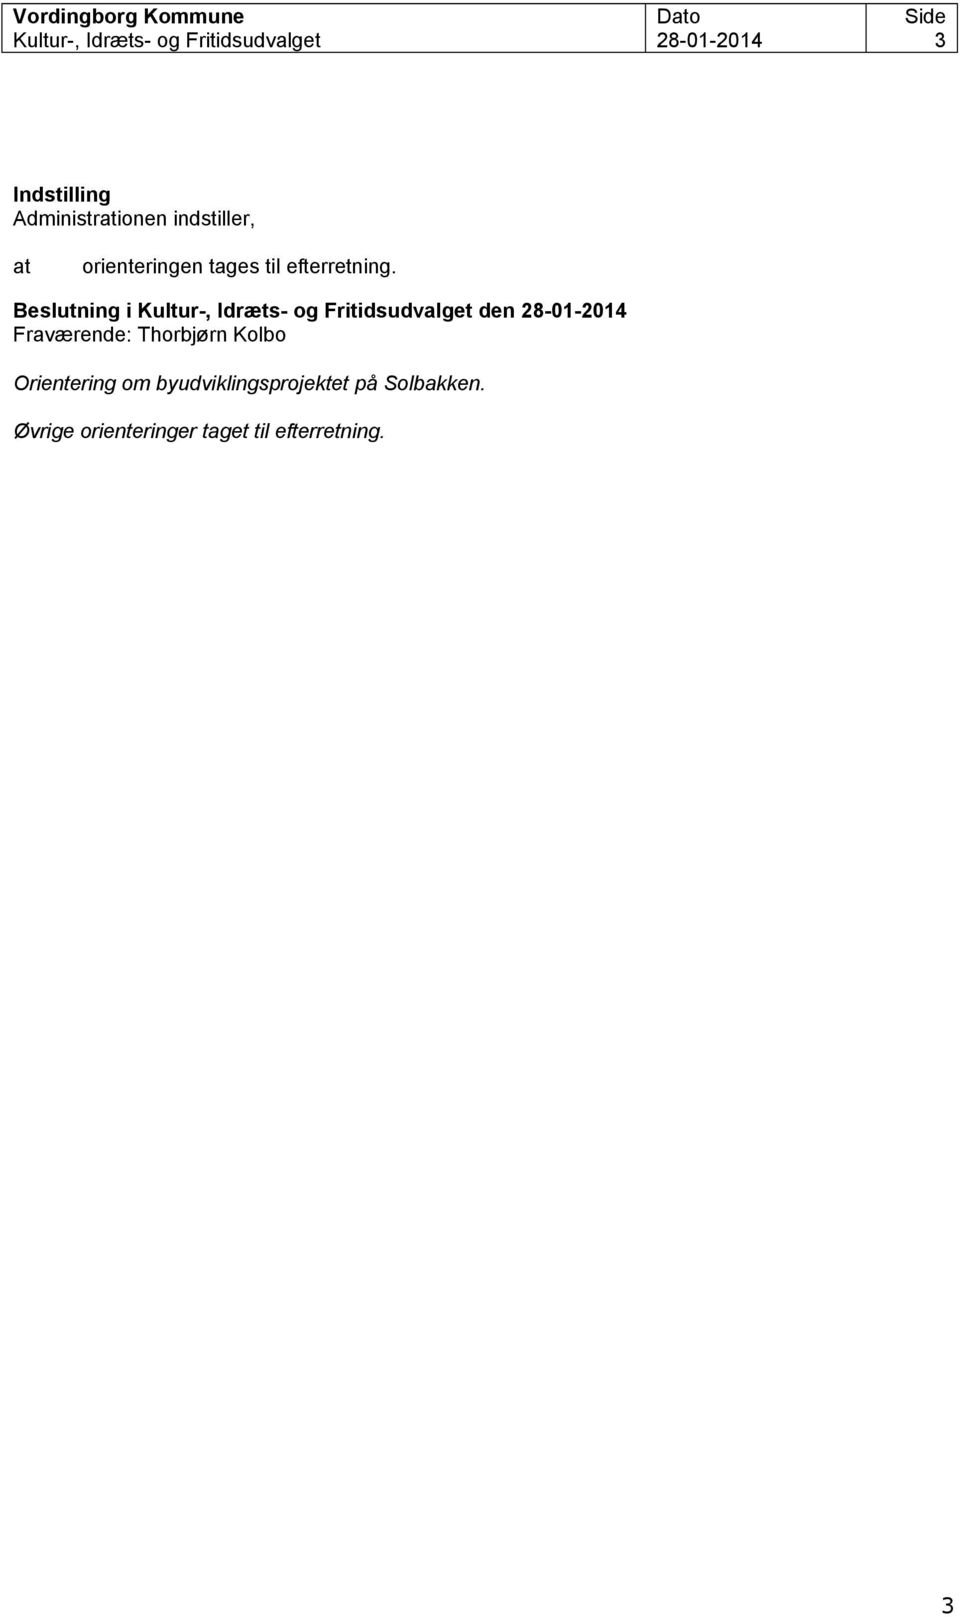 Beslutning i Kultur-, Idræts- og Fritidsudvalget den 28-01-2014 Fraværende: Thorbjørn